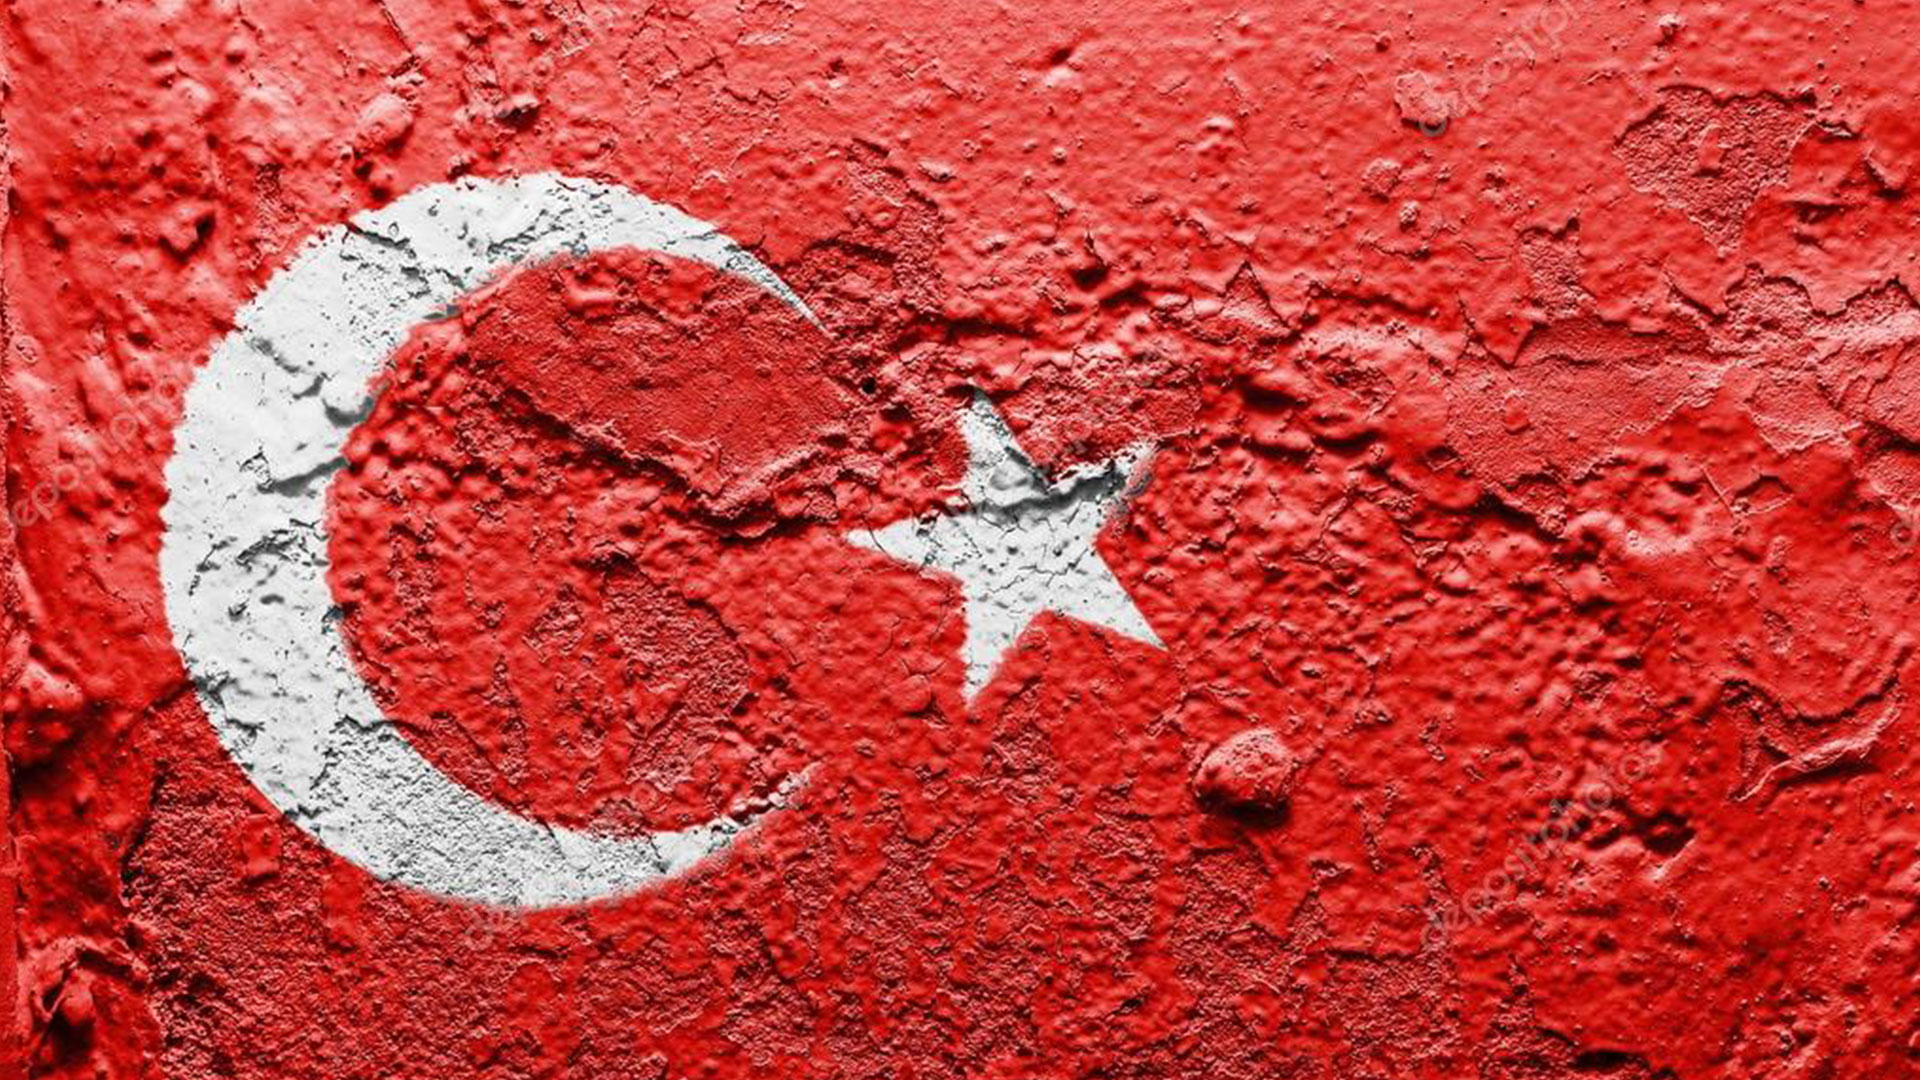 turk bayragi resimleri 2020 8